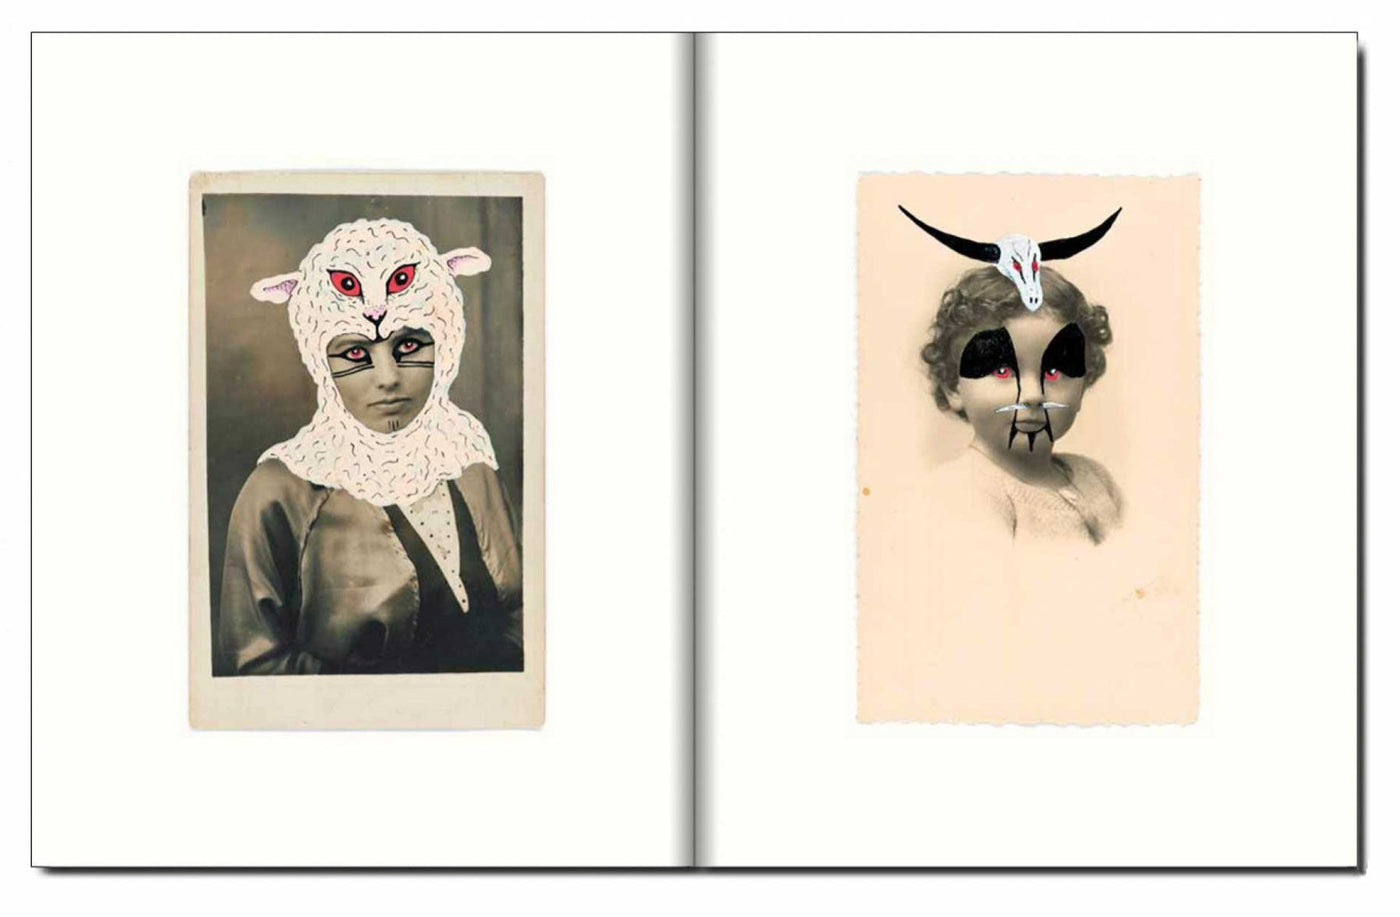 Mascarade by Mathieu Van Assche - Tipi bookshop